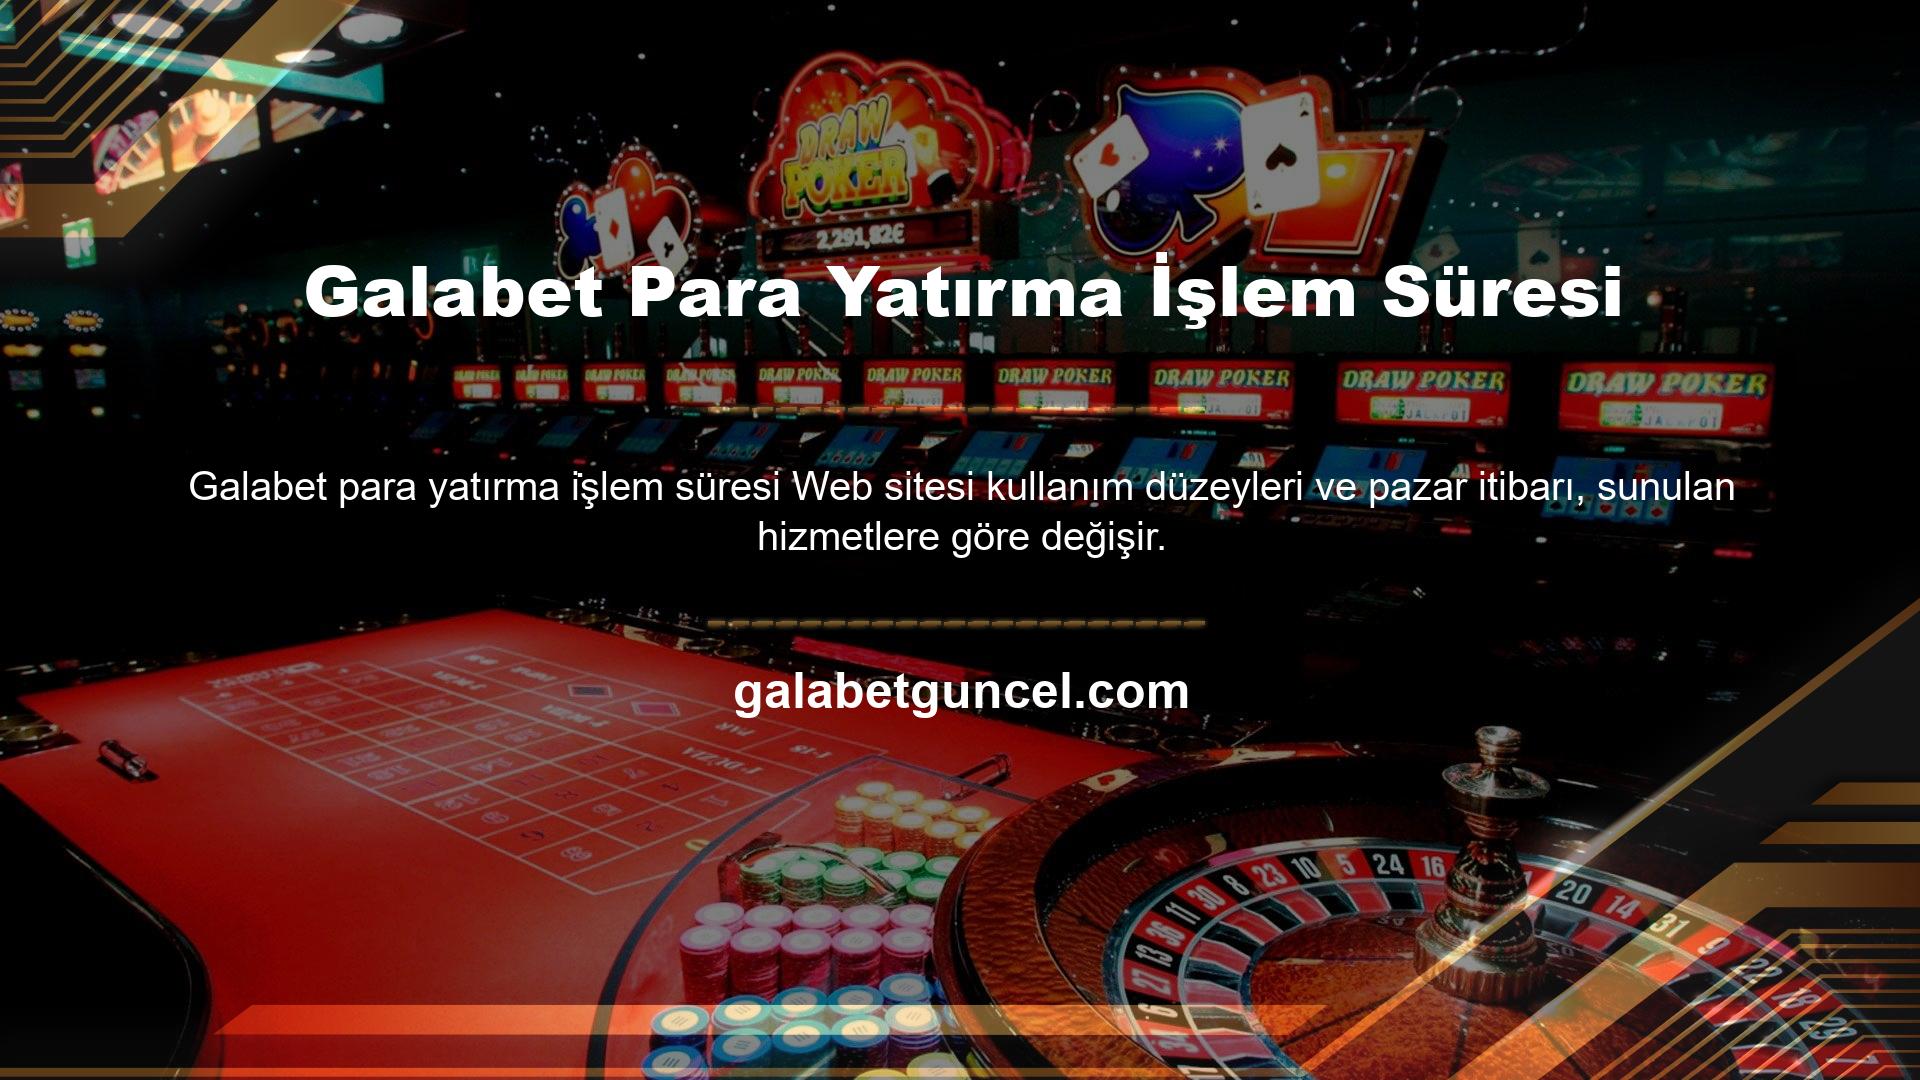 Galabet daha önce de Türk oyuncularla içerik paylaşmıştı